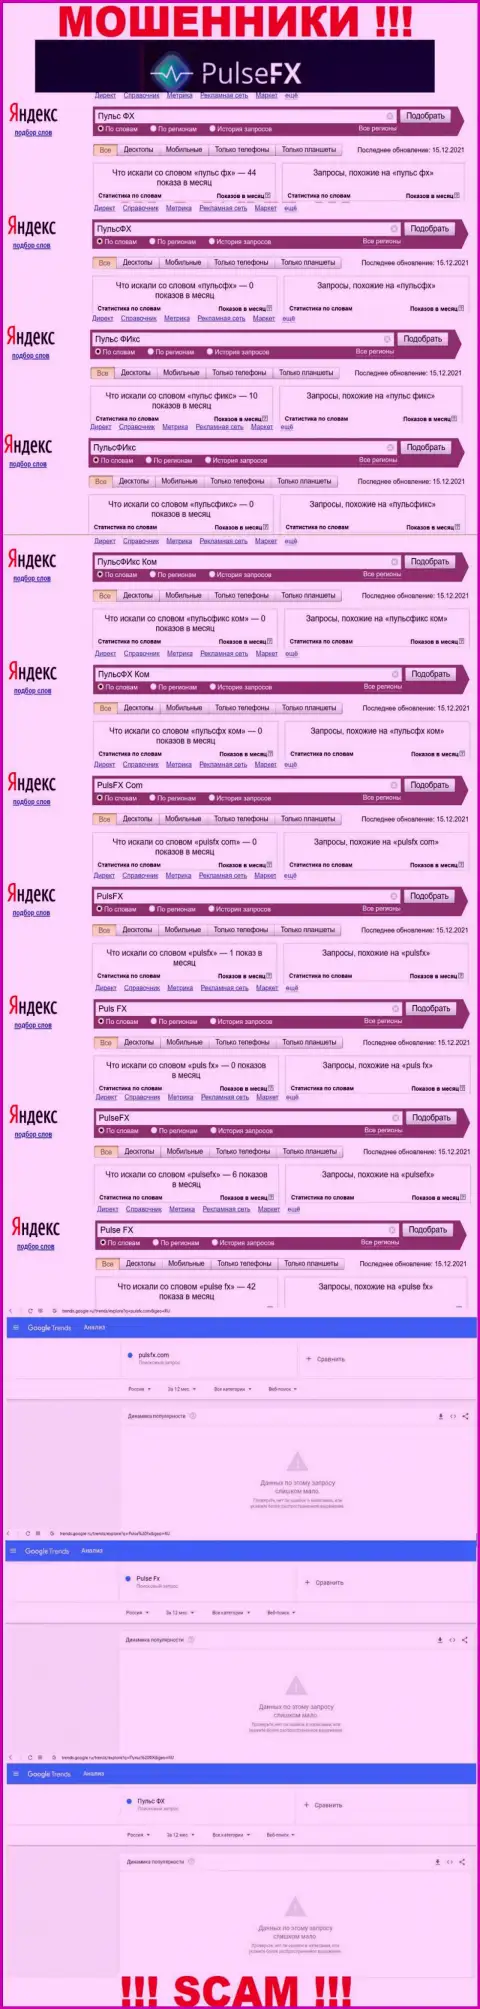 Количество поисковых запросов во всемирной сети internet по бренду мошенников PulseFX